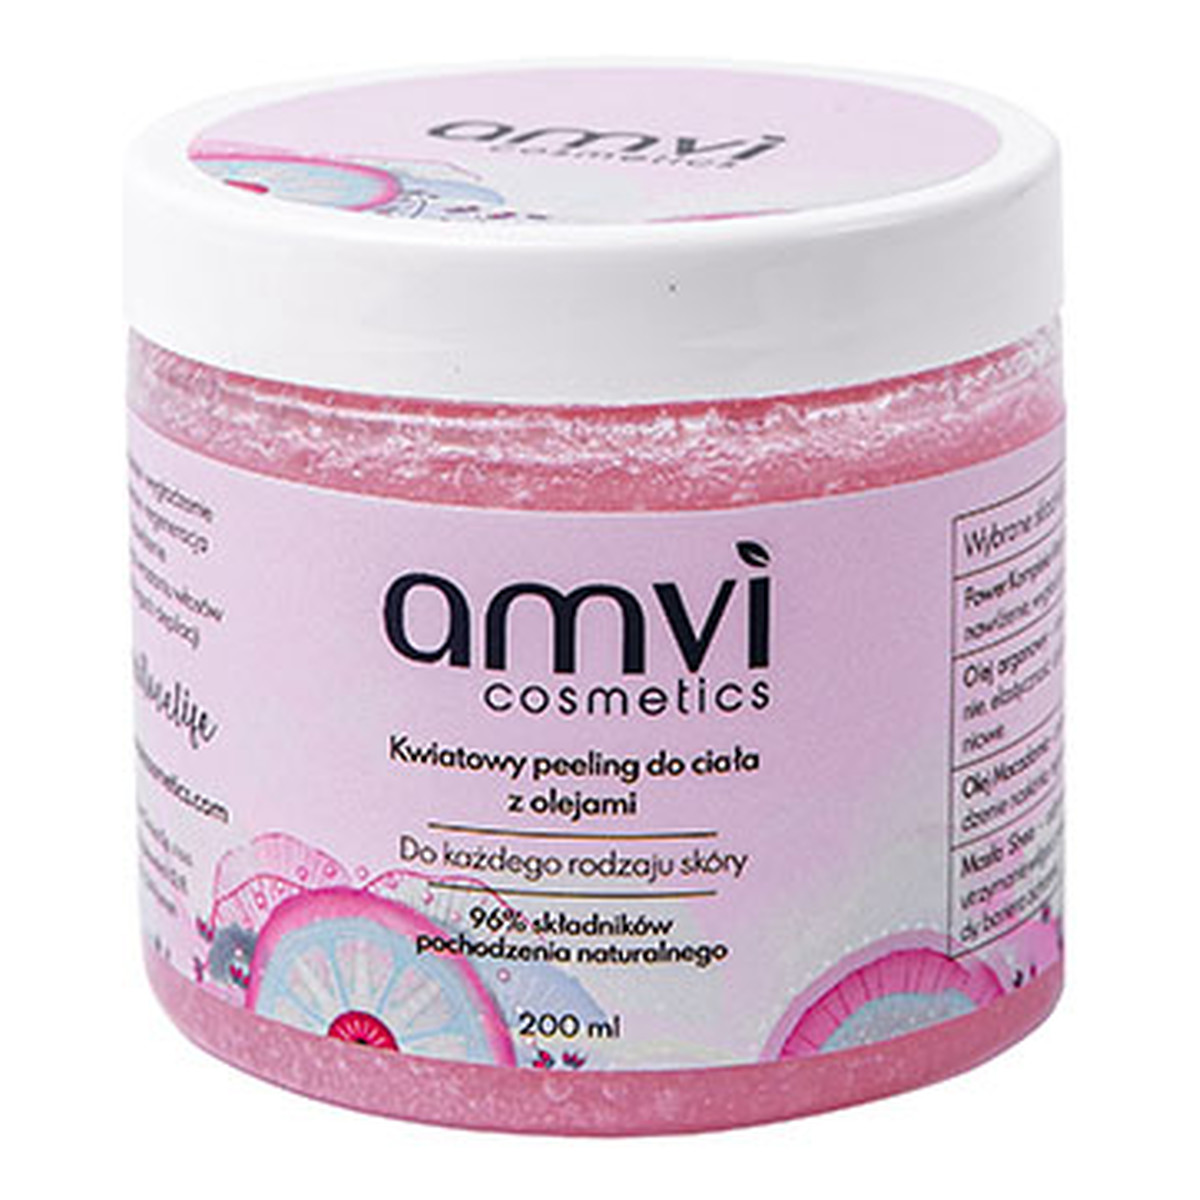 Amvi Cosmetics Kwiatowy peeling do ciała z olejami do każdego rodzaju skóry 200ml